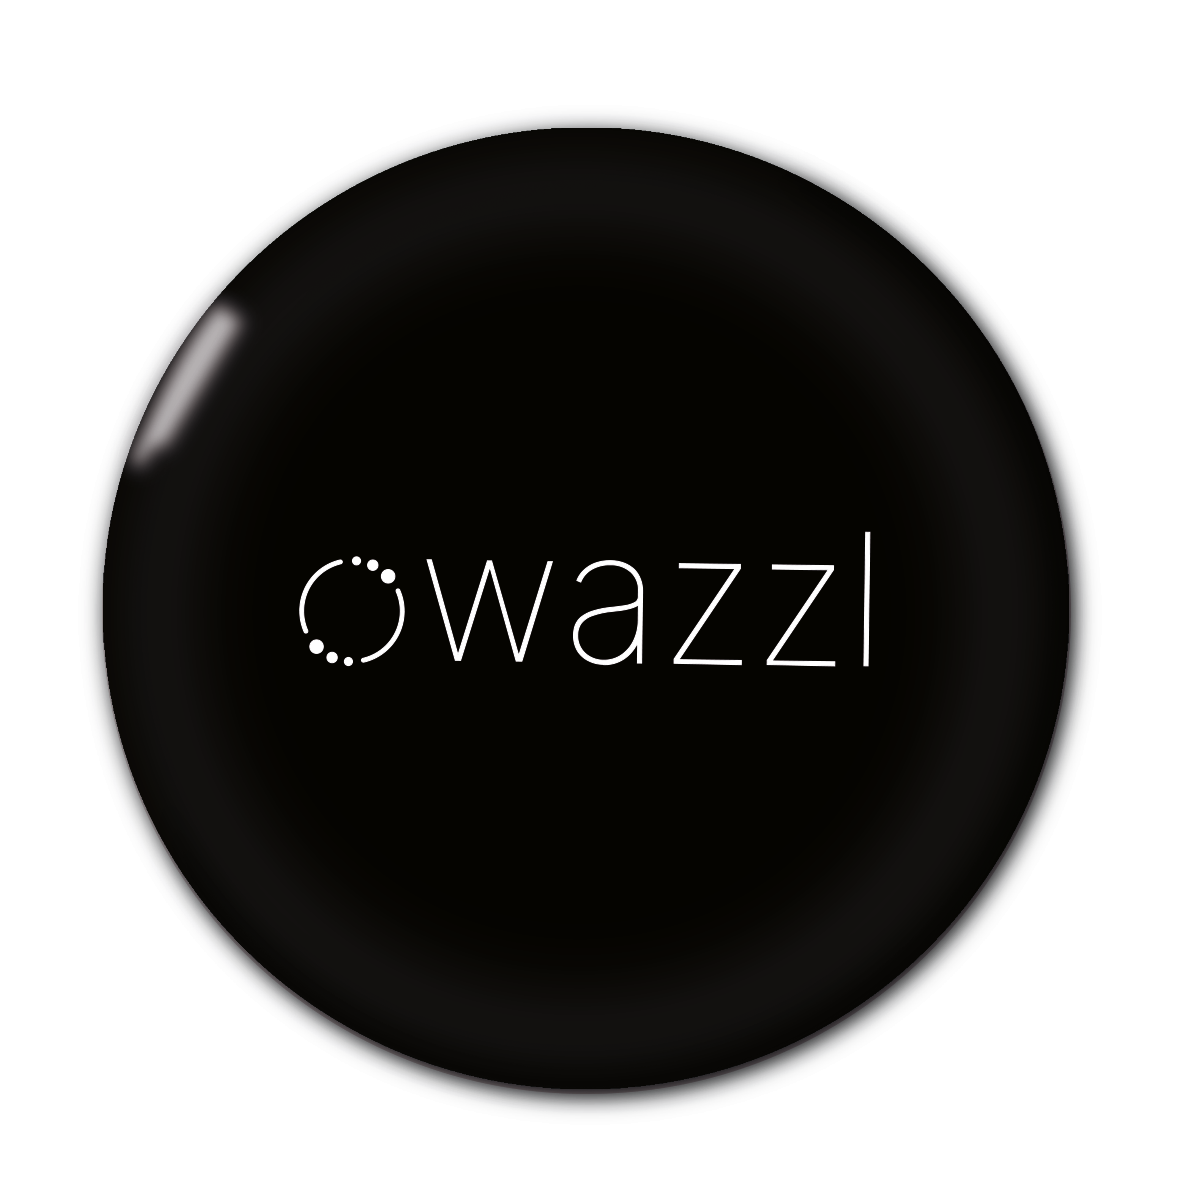 wazzl black - Digital business card